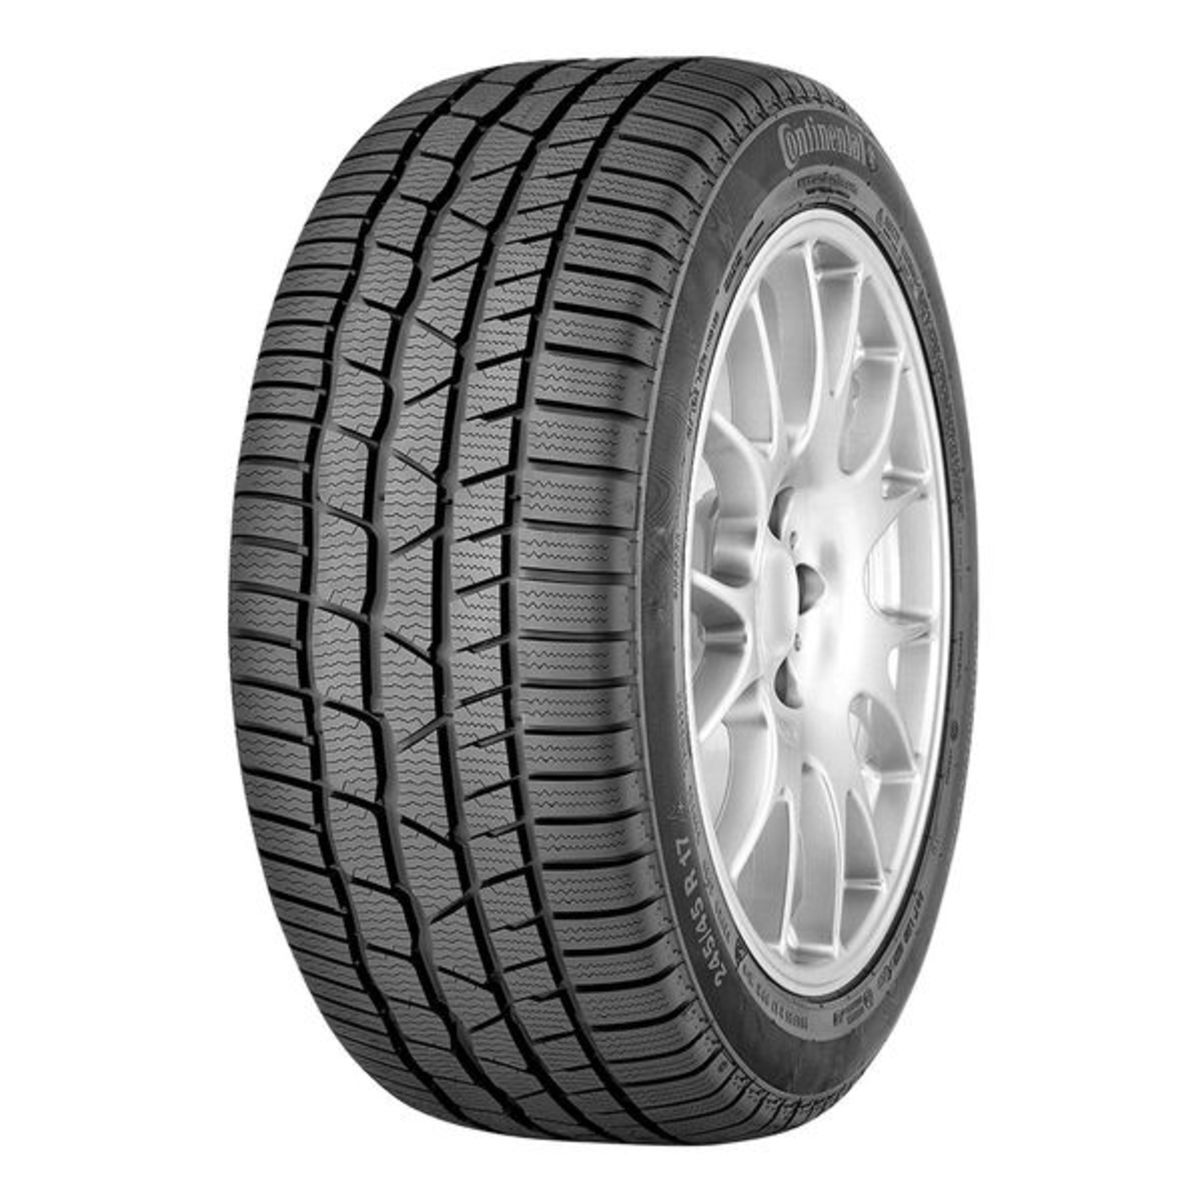 Neumáticos de invierno CONTINENTAL ContiWinterContact TS 830 P 235/45R19 XL 99V